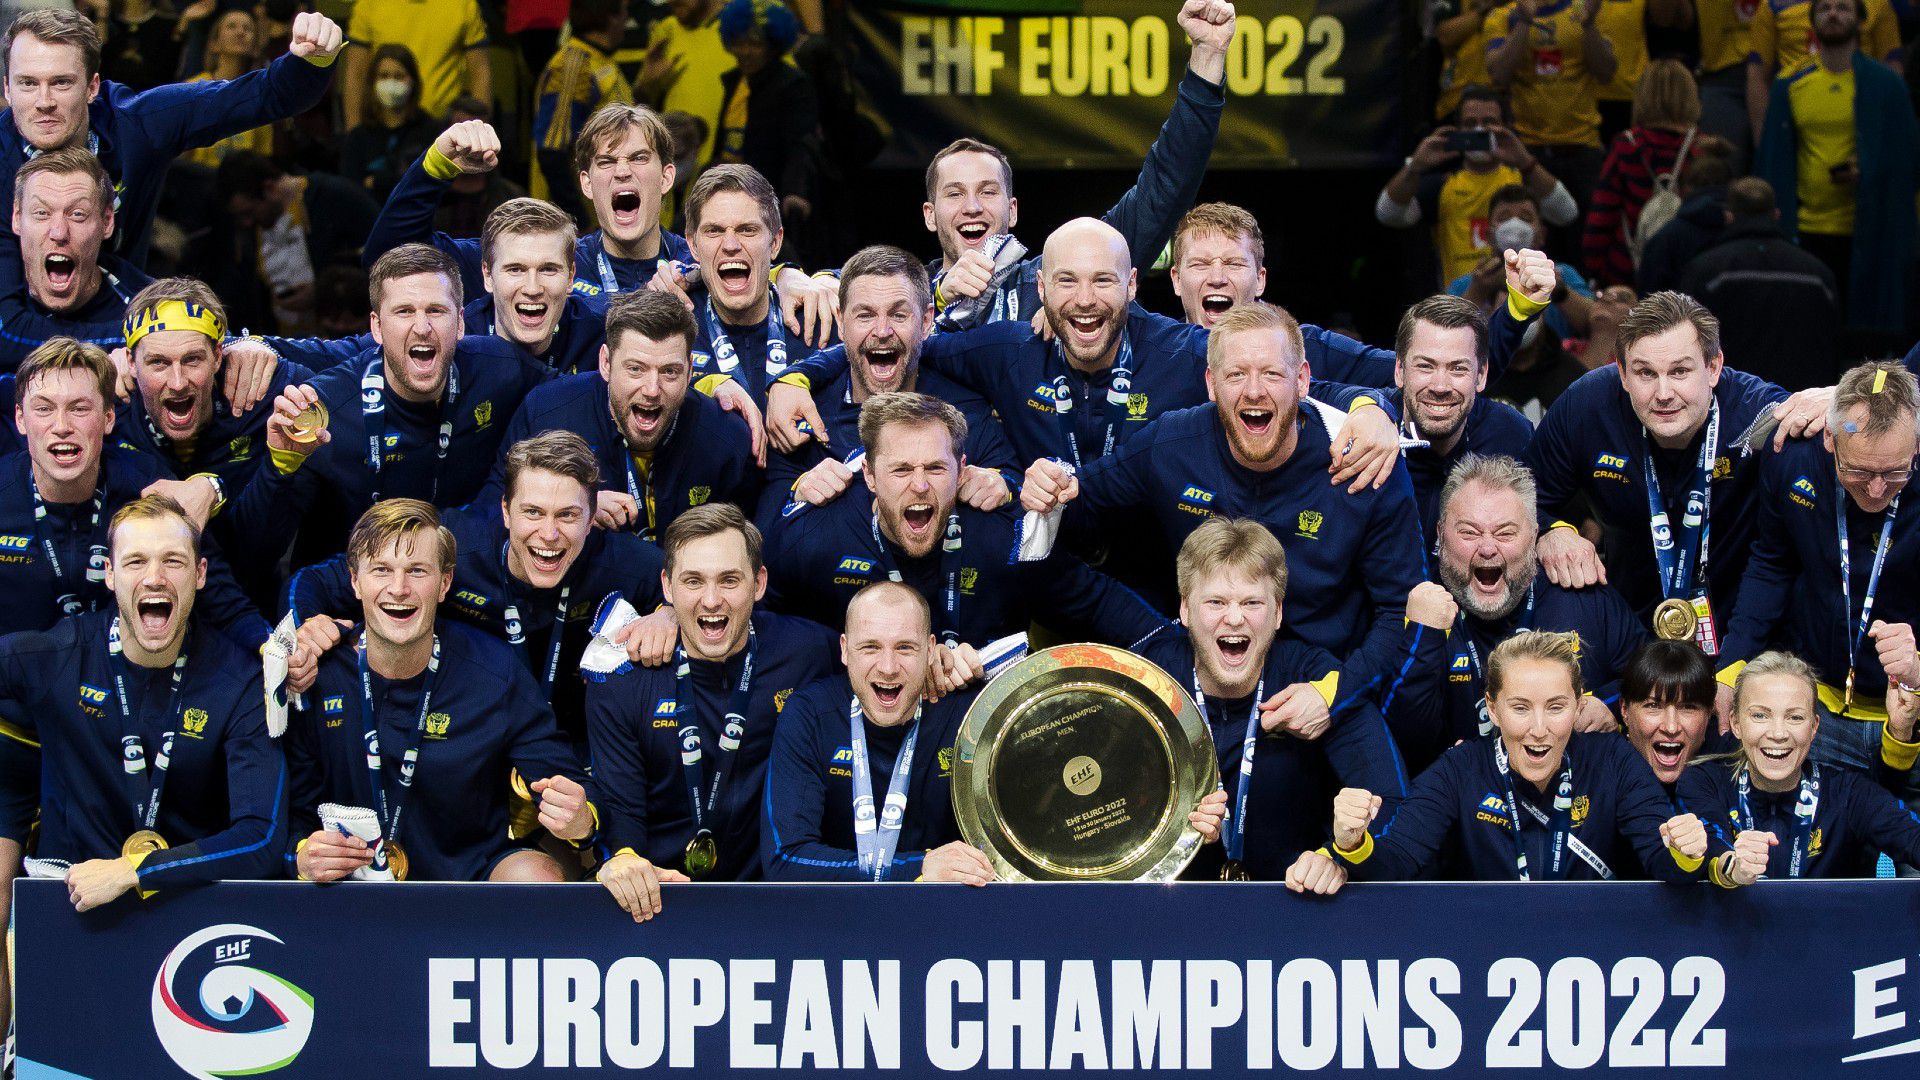 Húsz év után Budapesten lett Európa-bajnok a svéd férfi kézilabda-válogatott (Fotó: Getty Images)